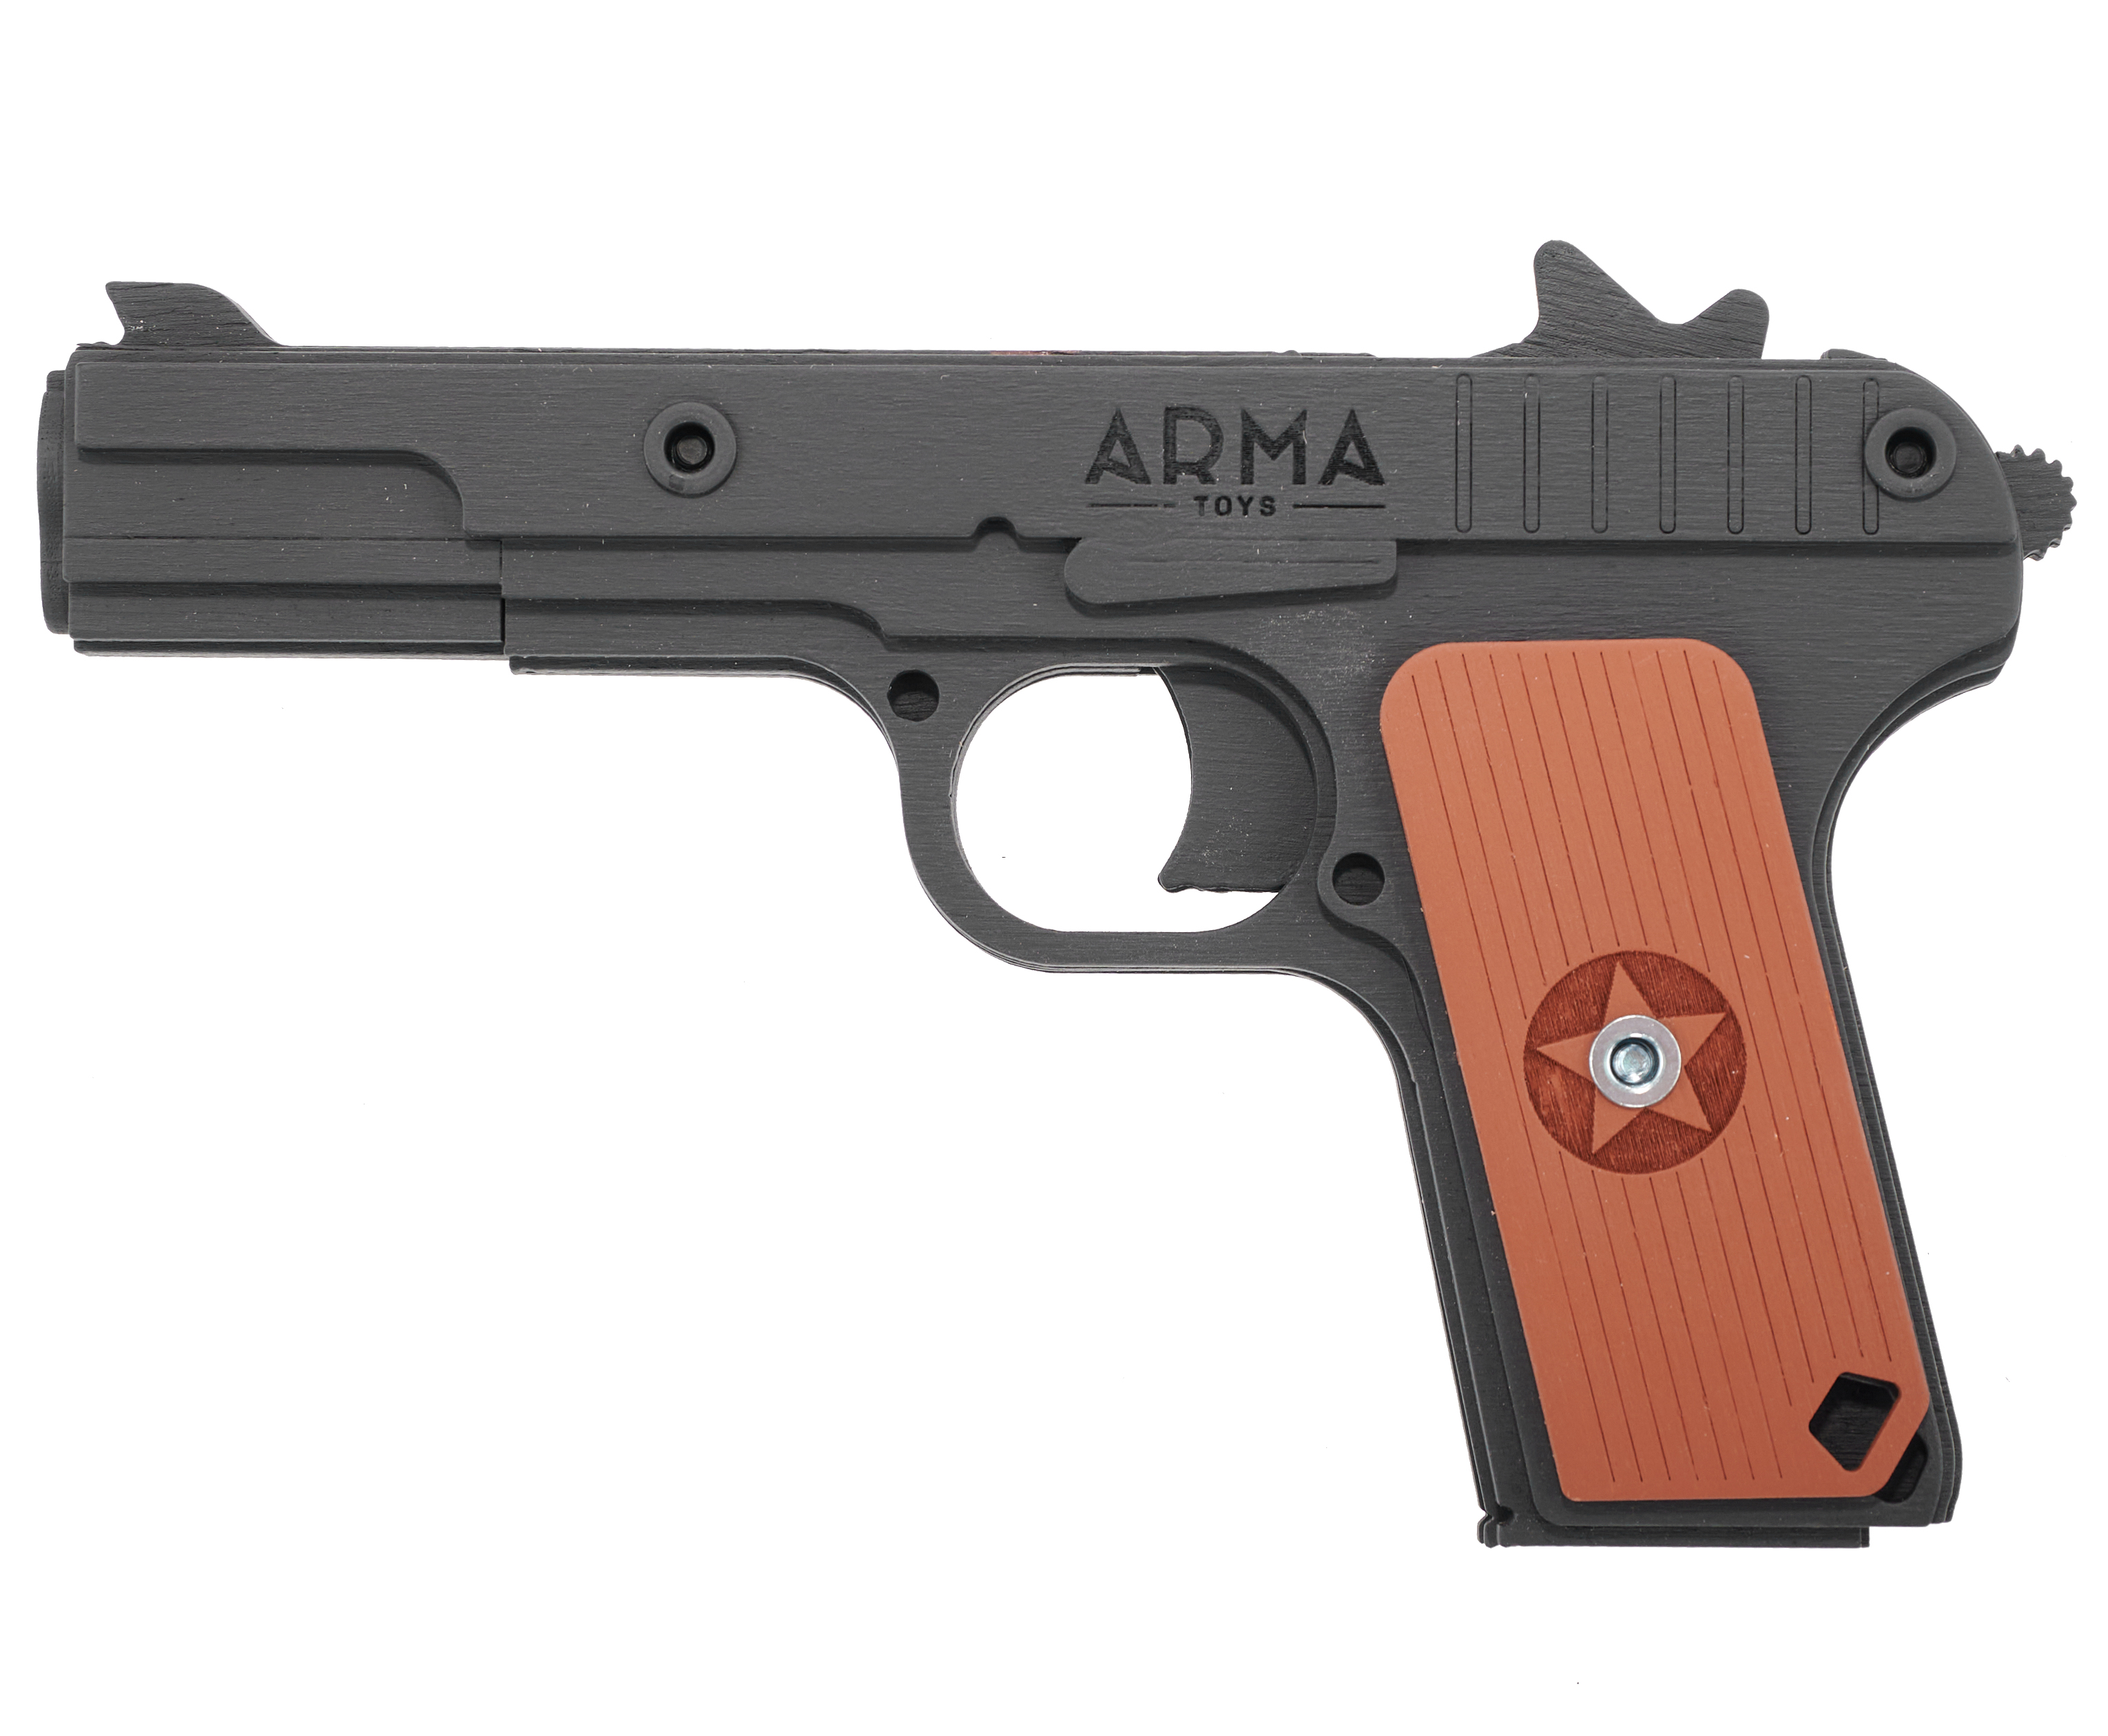 Резинкострел игрушечный Arma toys пистолет ТТ макет, Тульский Токарев, AT019k, окрашенный резинкострел игрушечный arma toys пистолет тт макет токарев at019